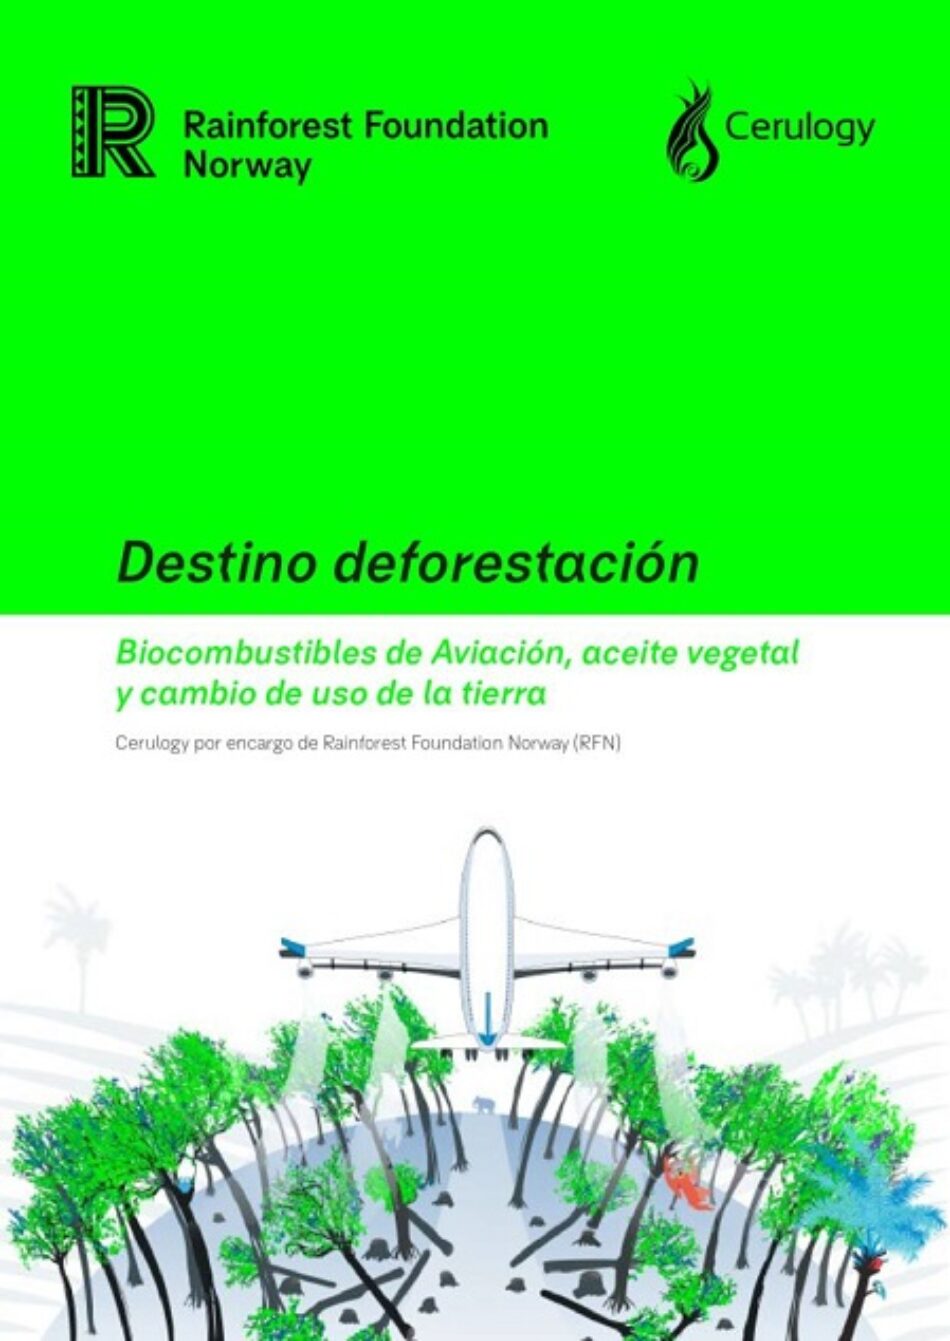 Los objetivos climáticos de la aviación podrían conducir a la deforestación de más de tres millones de hectáreas de selva